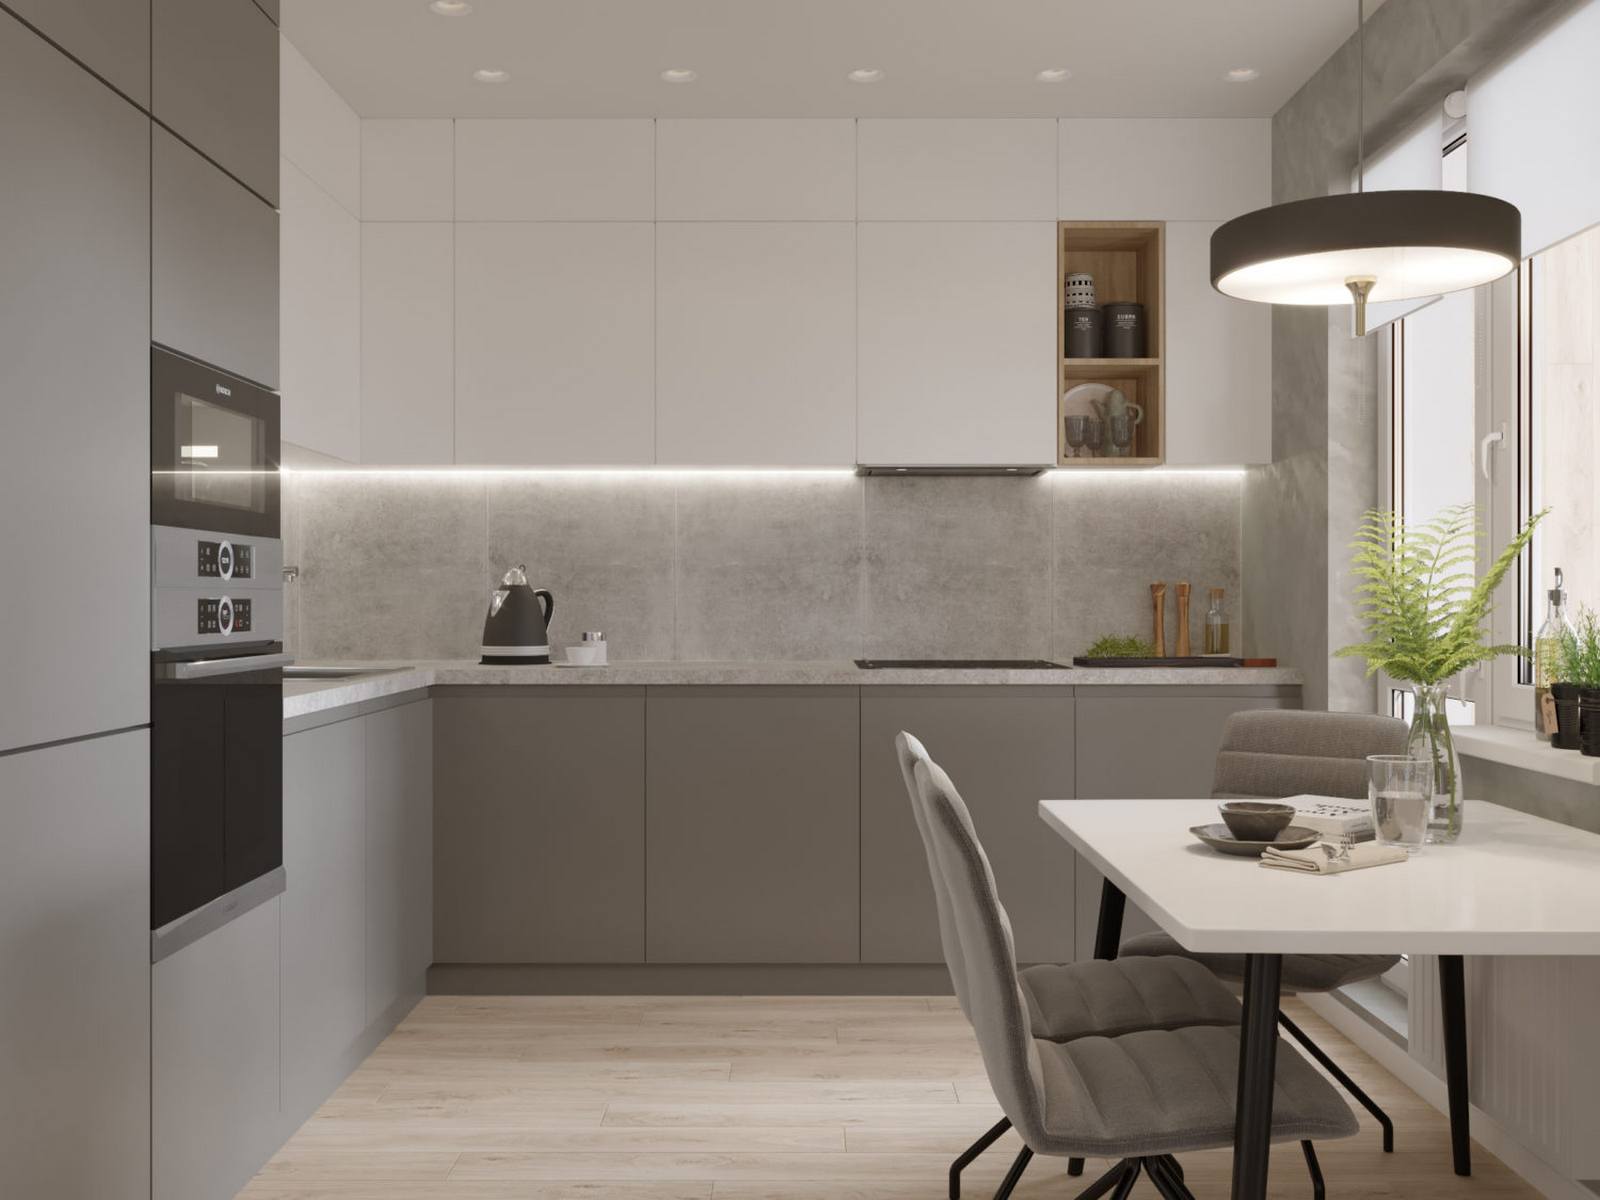 Phòng bếp lựa chọn thiết kế kiểu chữ L - giải pháp phù hợp với những căn hộ có diện tích vừa và nhỏ. Bên cạnh hệ thống đèn âm trần, NTK nội thất cũng bổ sung đèn gầm bên dưới mặt tủ bếp trên để cung cấp nguồn sáng dồi dào khi nấu nướng.